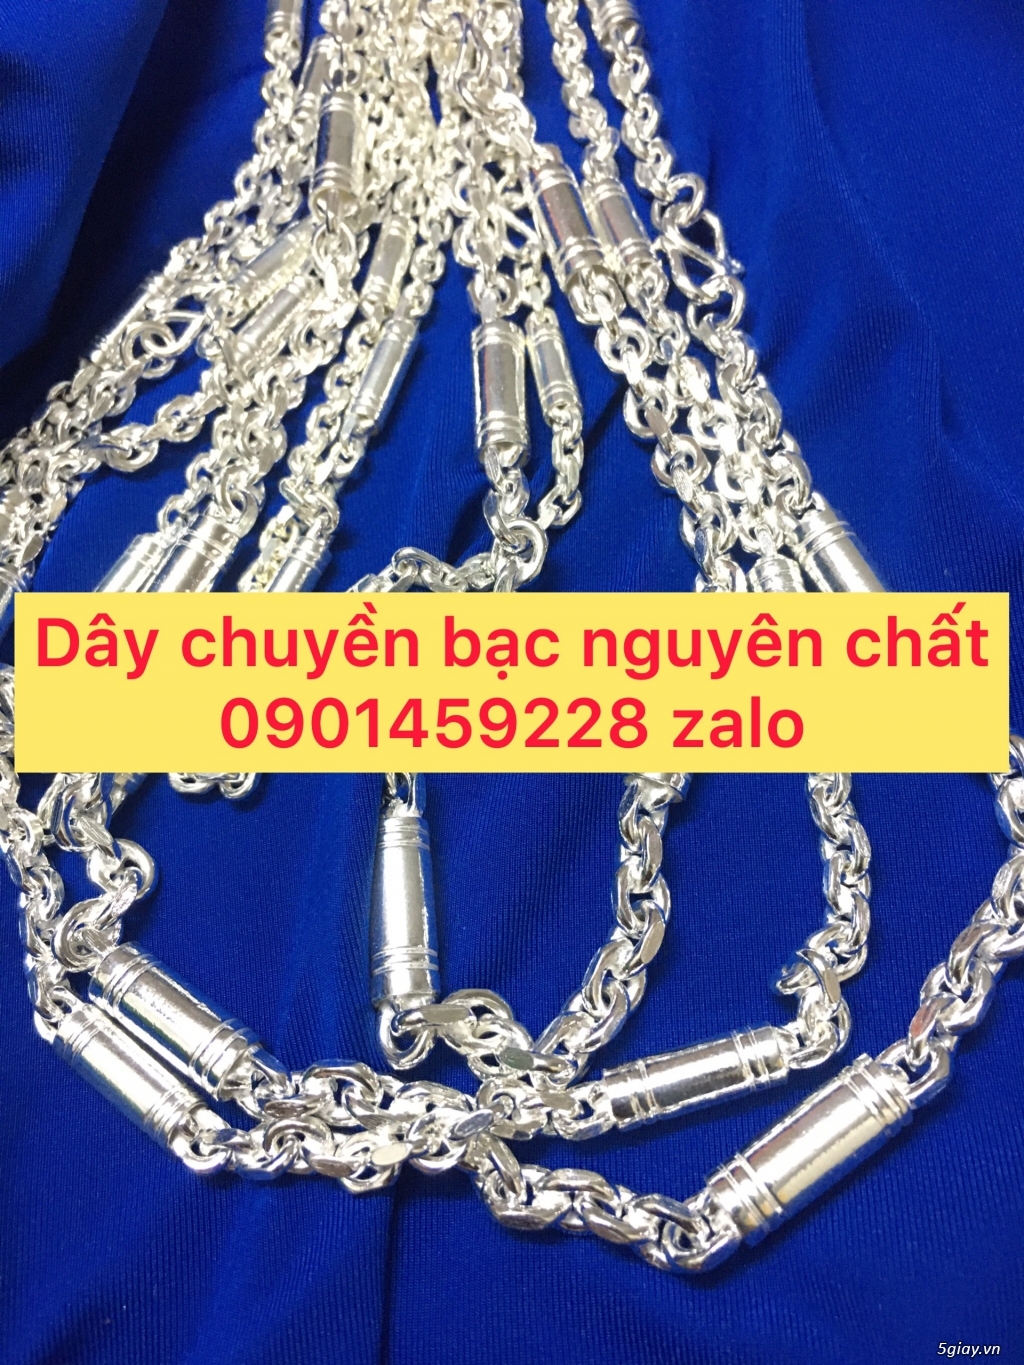 day chuyen bac nguyen chat - 2